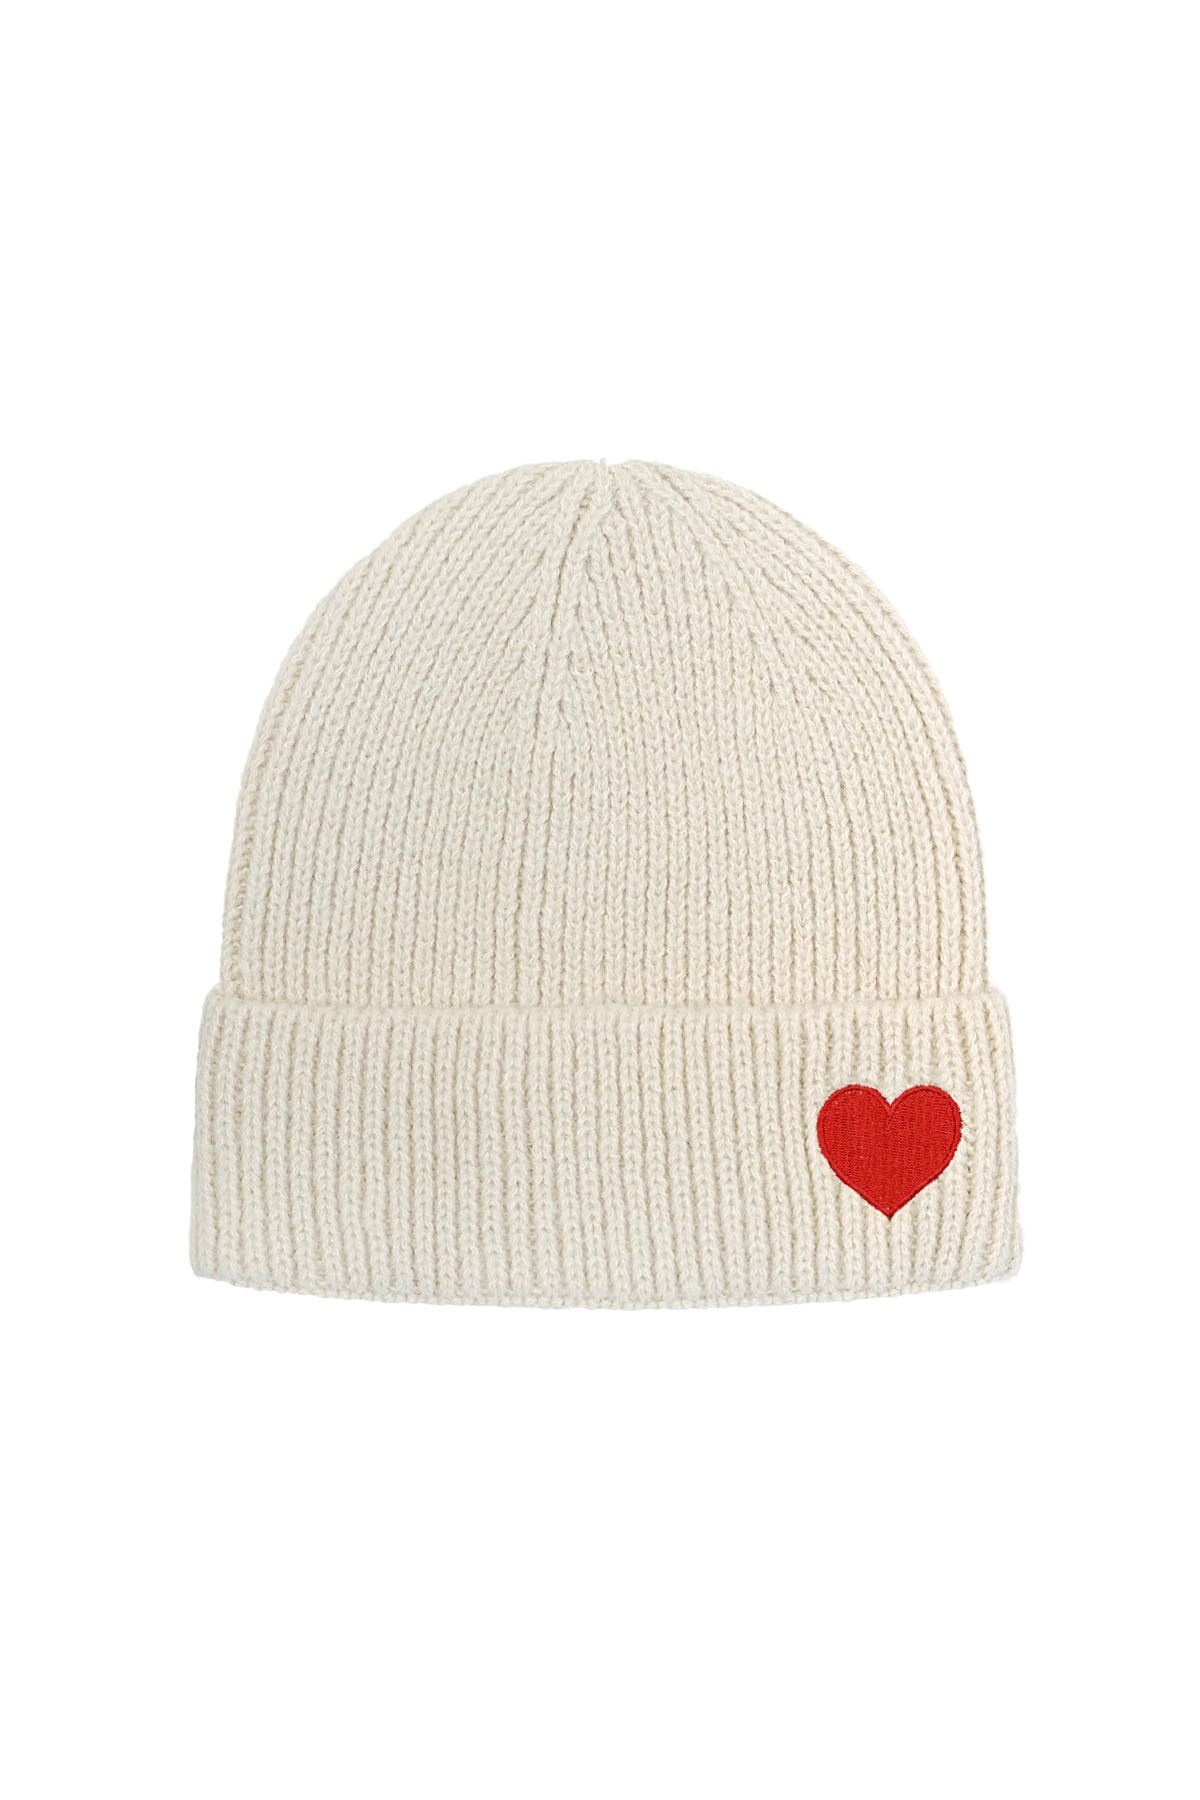 Kalp detaylı şapka - kırık beyaz h5 